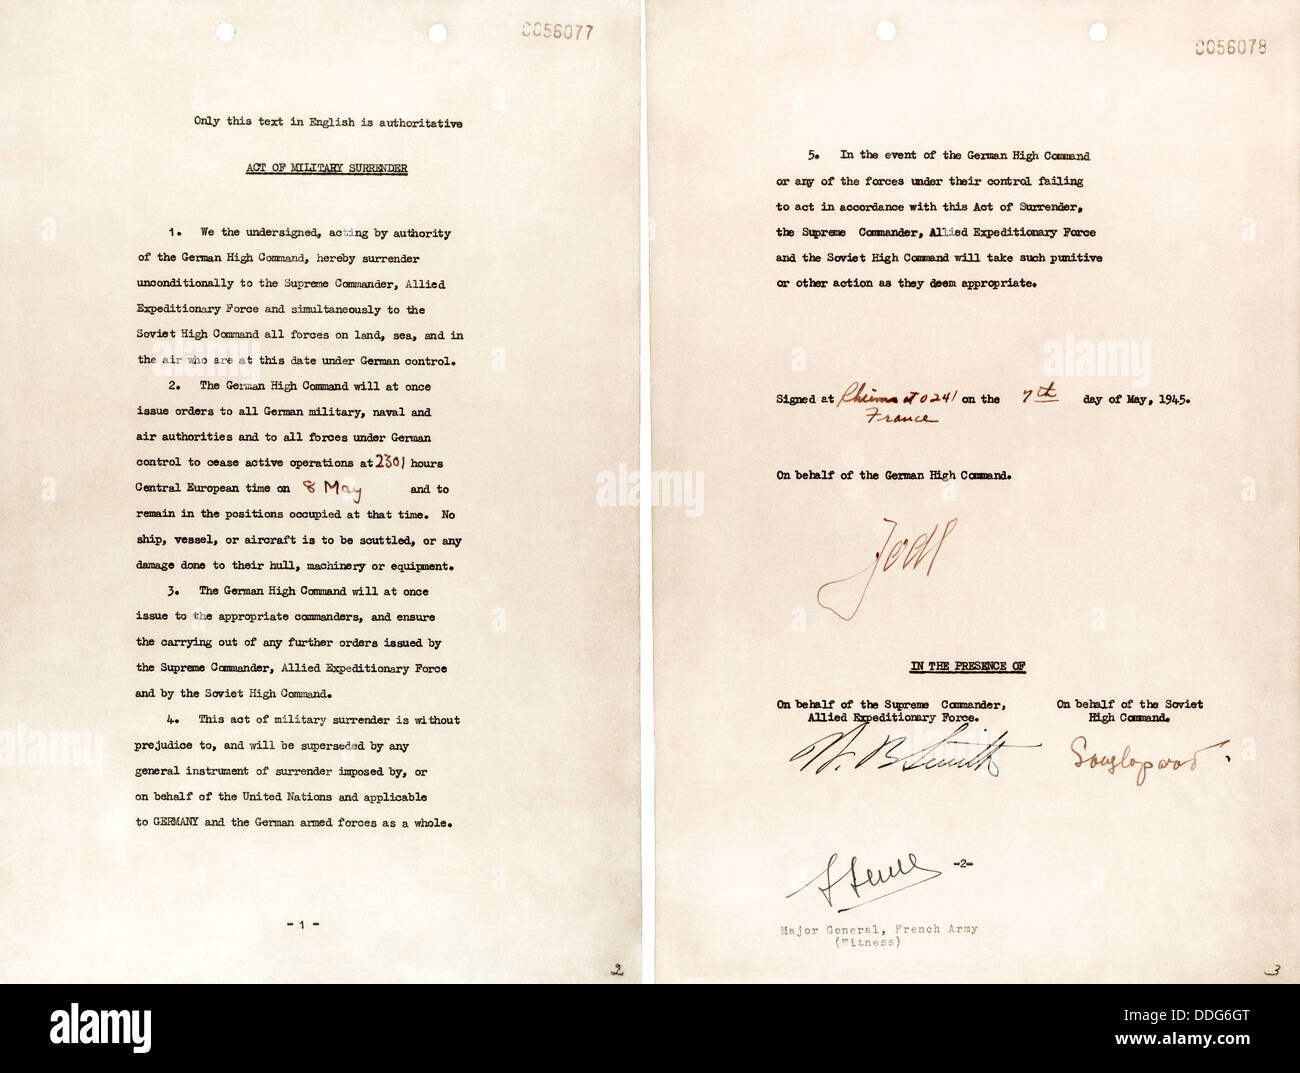 Strumento in tedesco di arrendersi documento firmato a Reims il 7 maggio 1945 Foto Stock